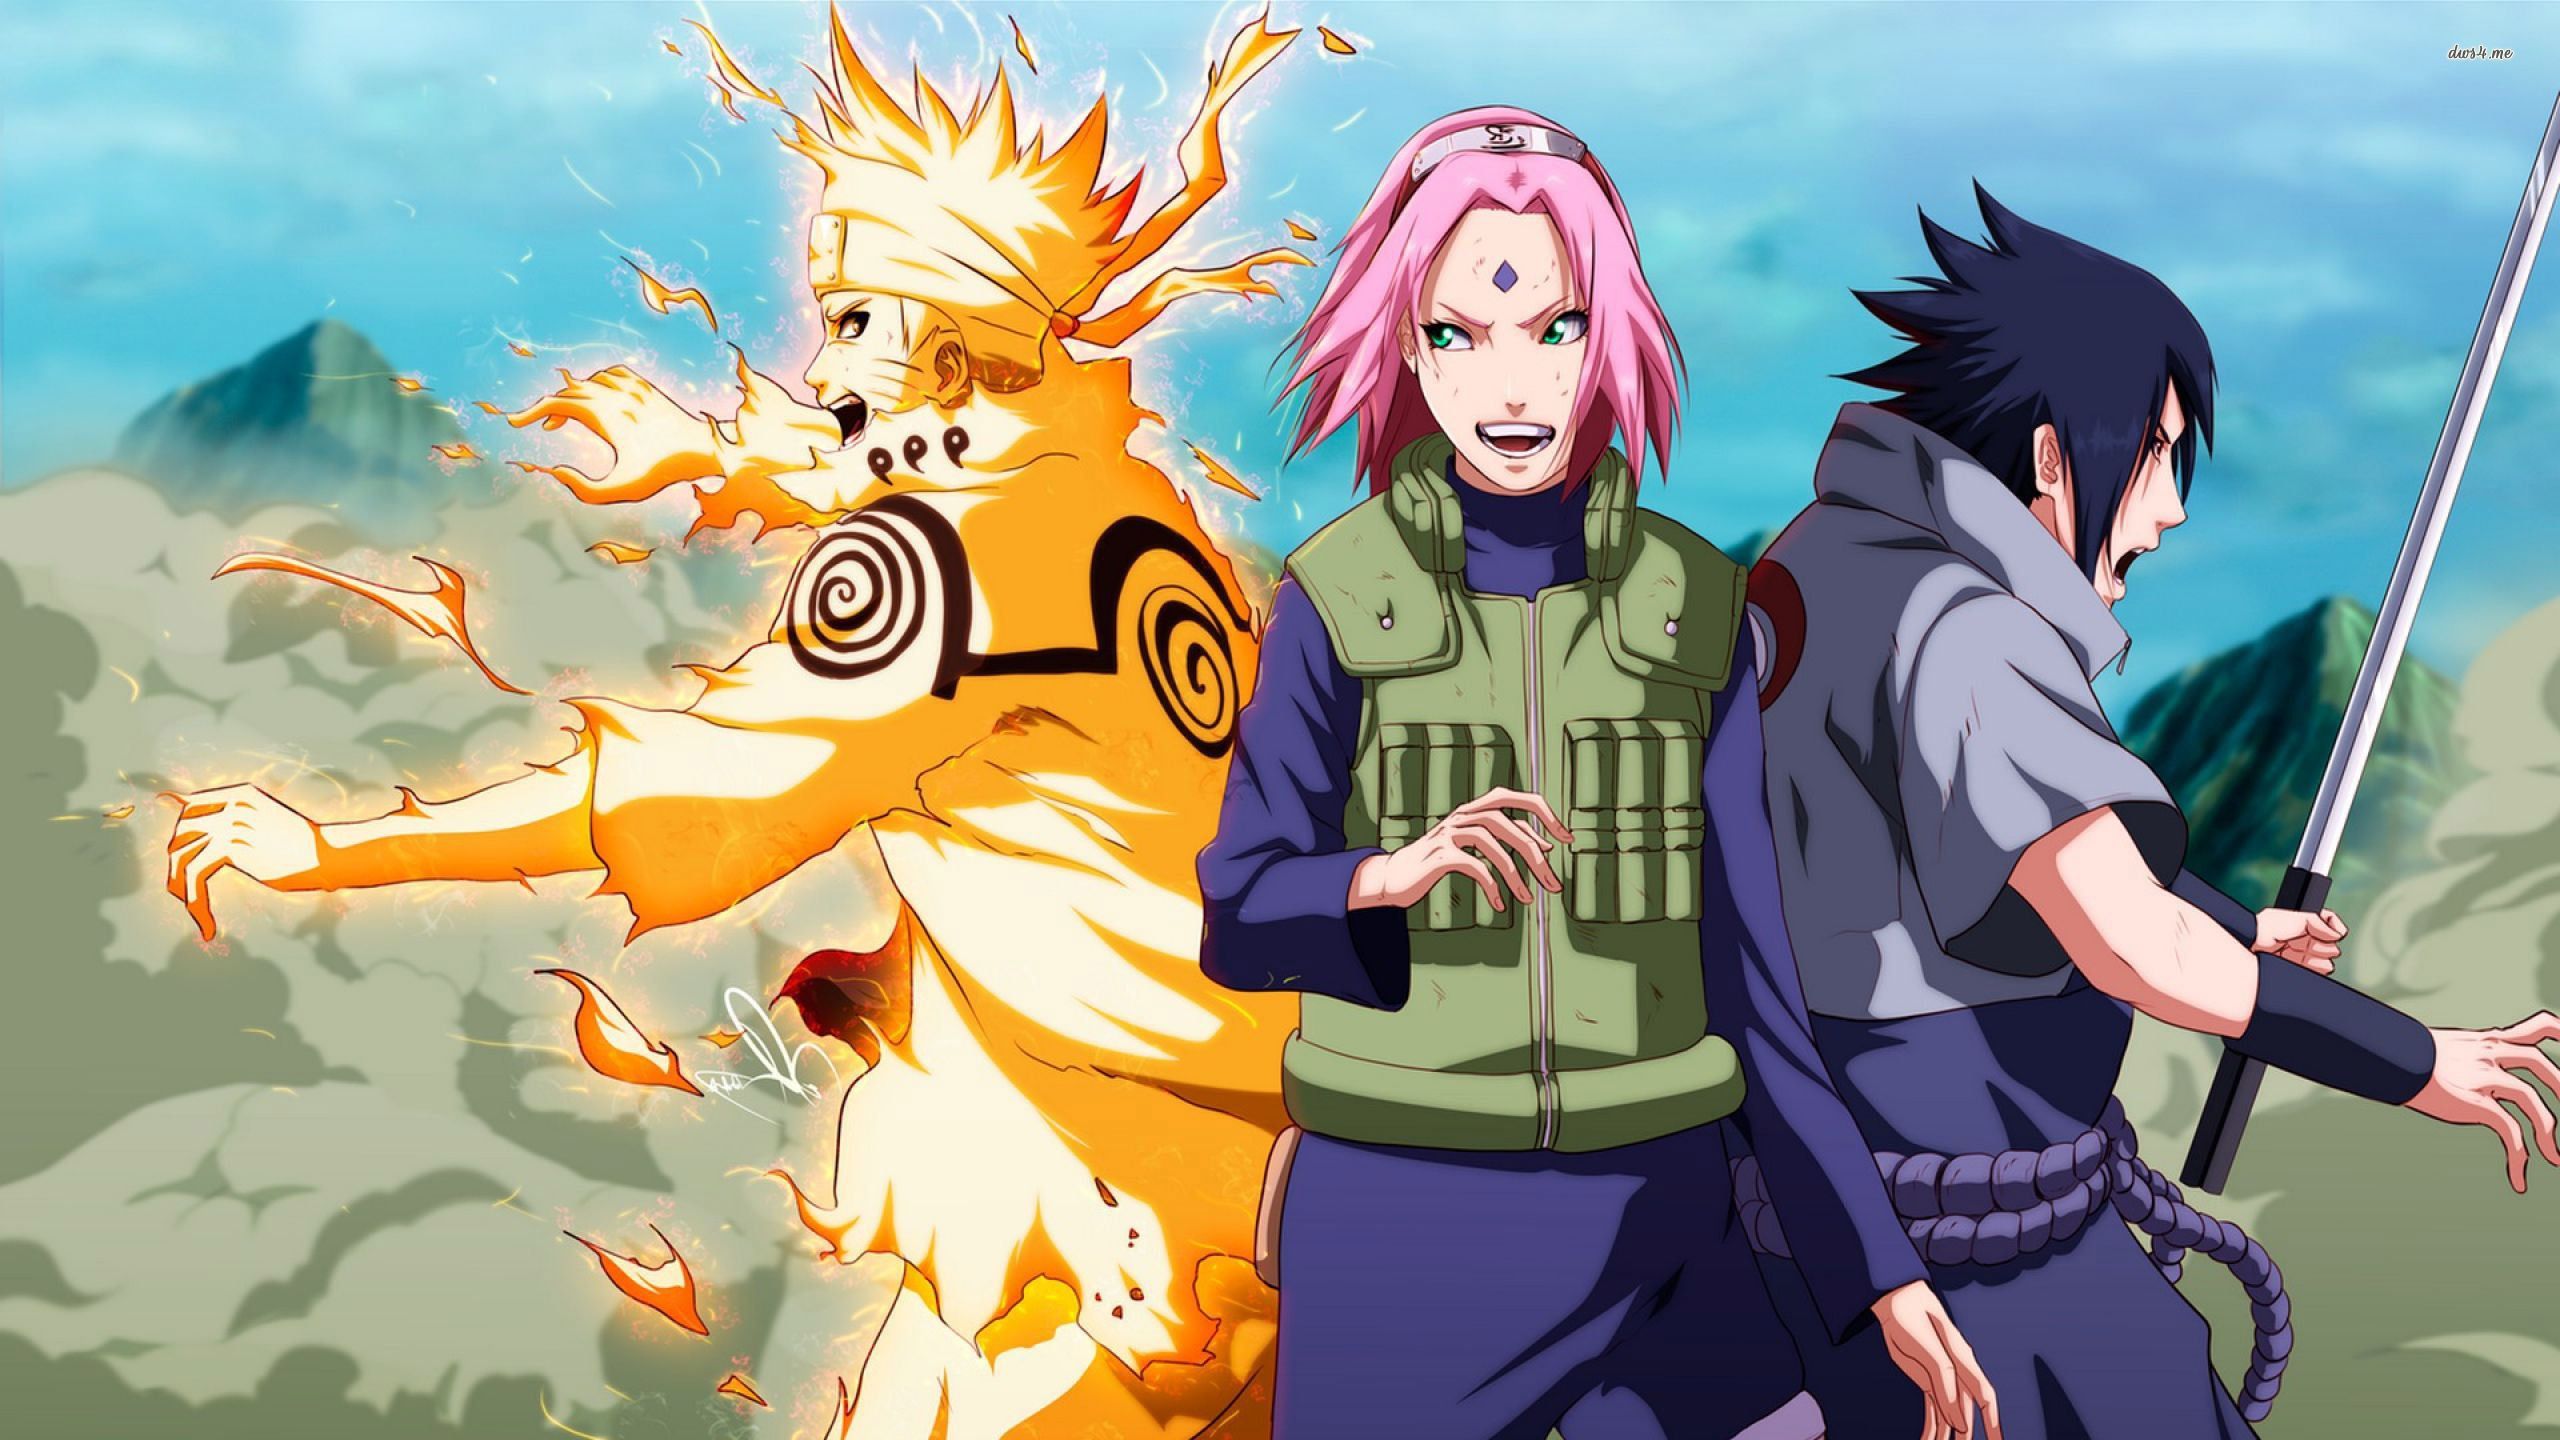 Wallpaper Naruto trên máy tính với cảnh Naruto đang chạy dọc đường phố, nổi bật với bộ quần áo màu cam tươi sáng. Một hình ảnh rất năng động, mang đến cảm giác vịnh cửu của niềm vui và hy vọng cho ngày mới. Hãy sử dụng tấm hình này như một lời nhắn nhủ tích cực cho bản thân mỗi khi bắt đầu một ngày mới.